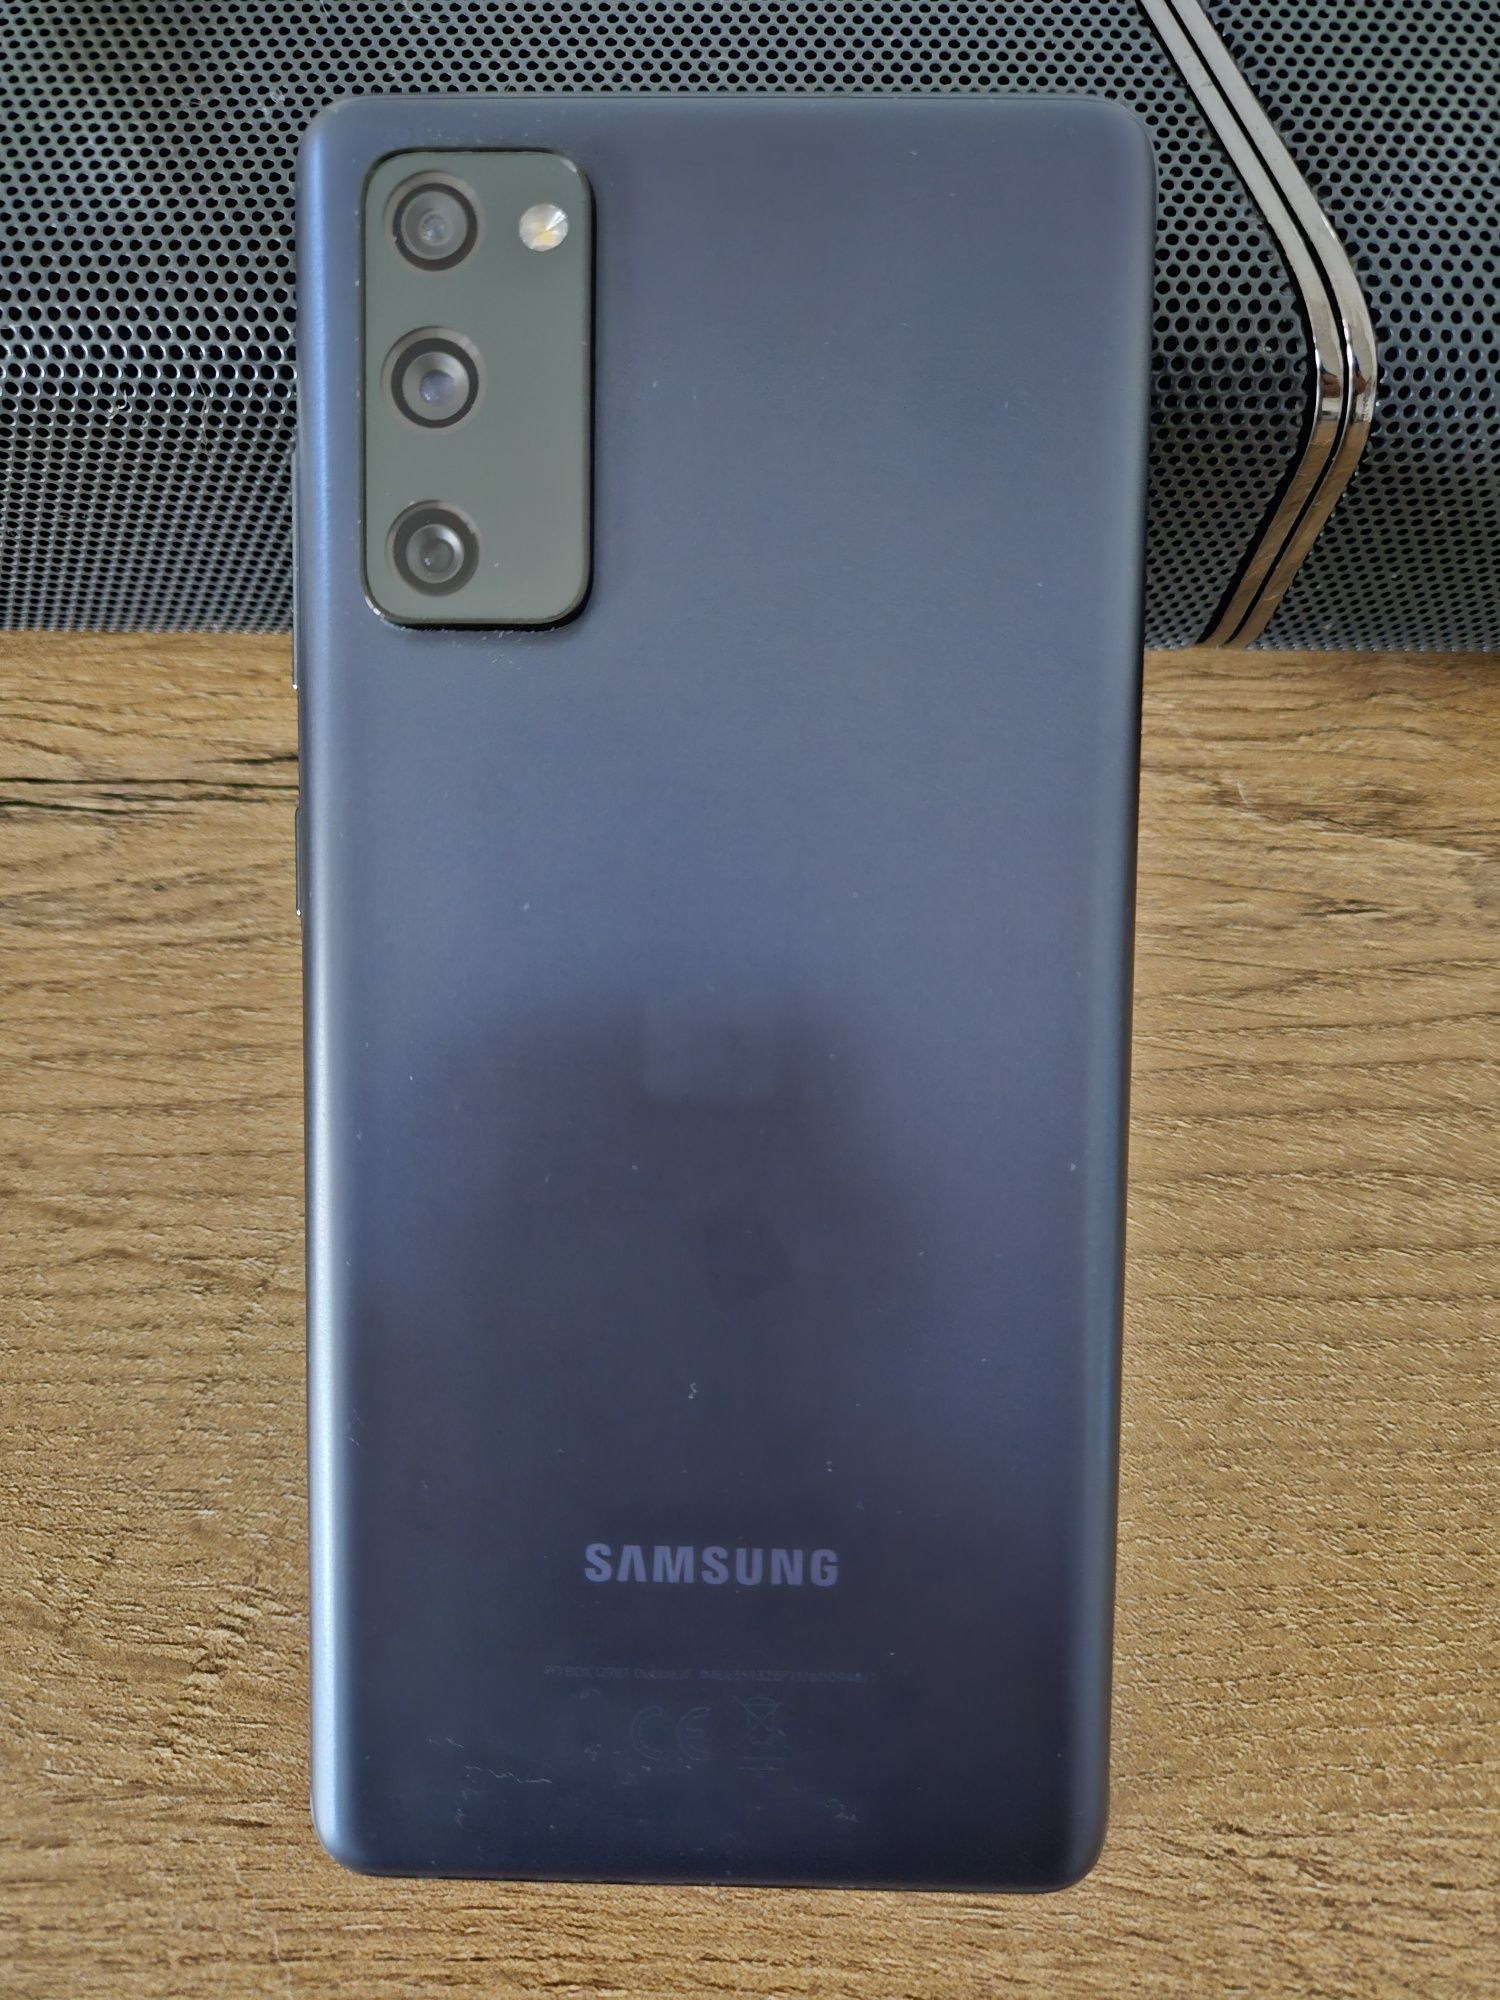 Samsung S20 FE 5G - używany. Stan idealny